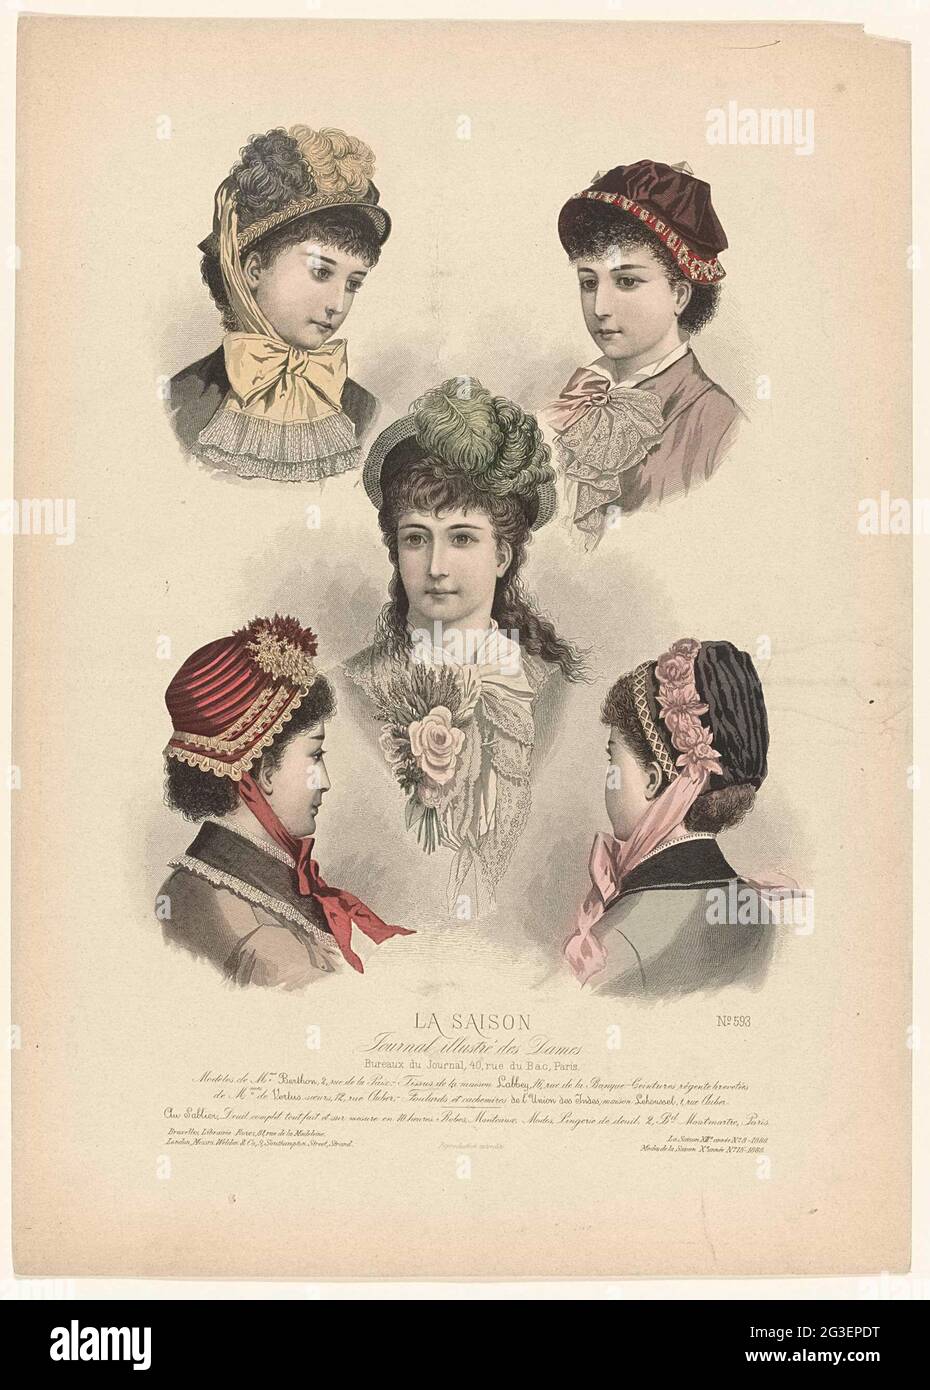 La saison, Journal illustré des Dames, 1880, 13e année, n° 8, n° 593:  Modèles de Mme Berthon (...). Cinq têtes de femme avec différents chapeaux.  Selon la légende: 'Modèles' de Berthon. Ci-dessous